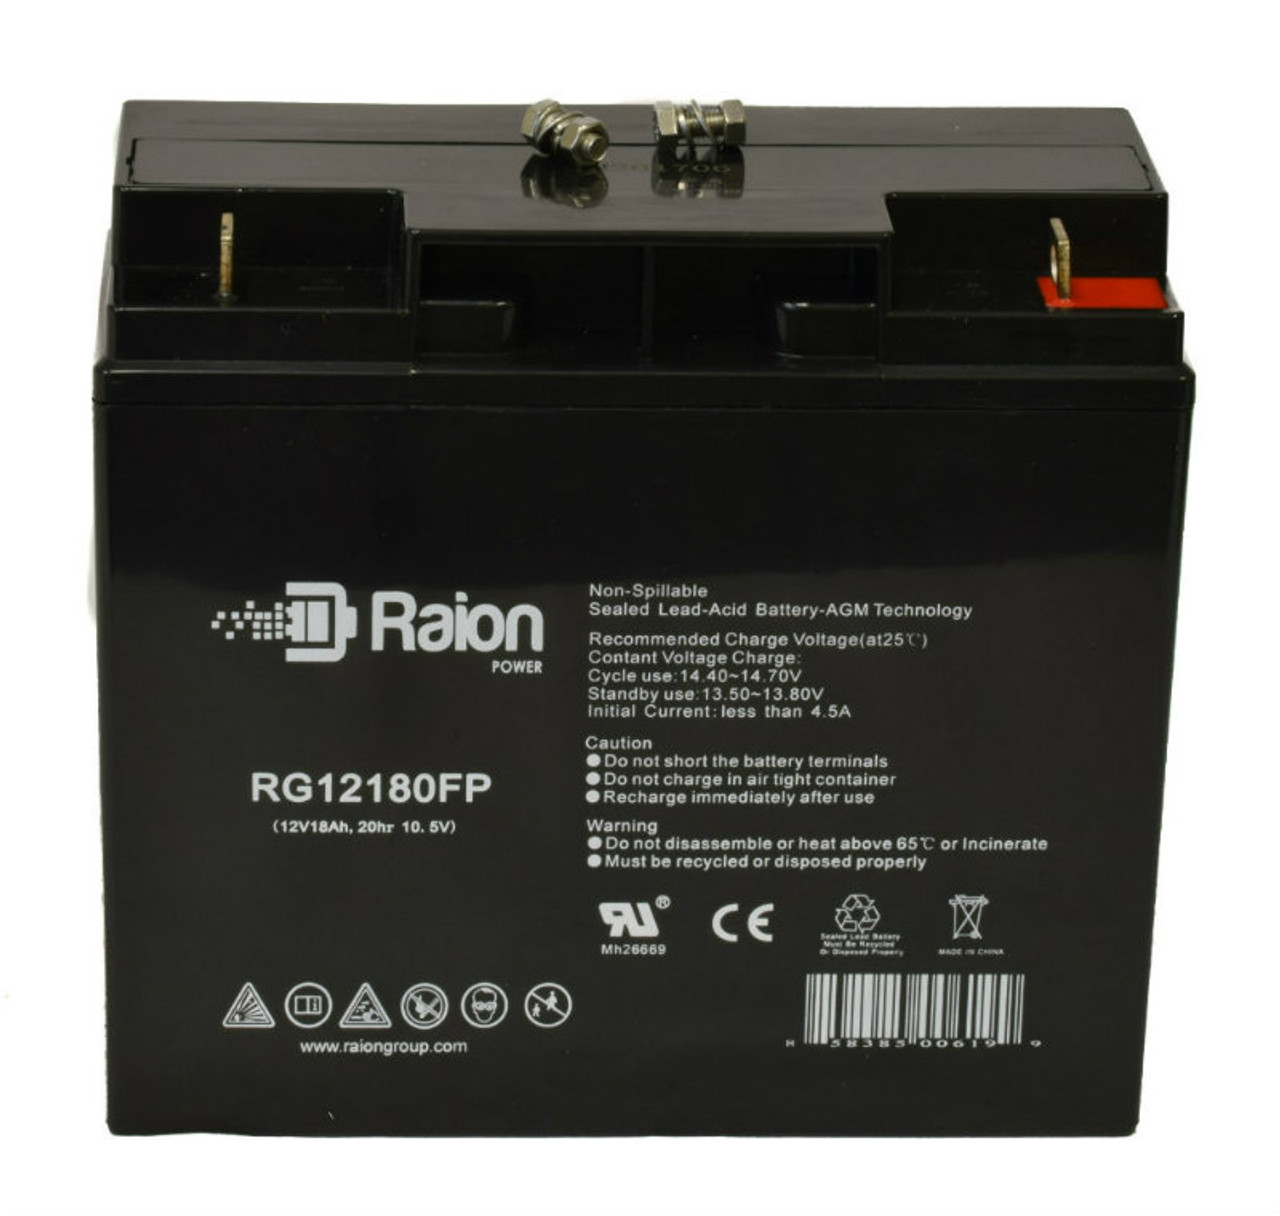 Raion Power RG12180FP 12V 18Ah Lead Acid Battery for Lightalarms 8700018 Retrofit